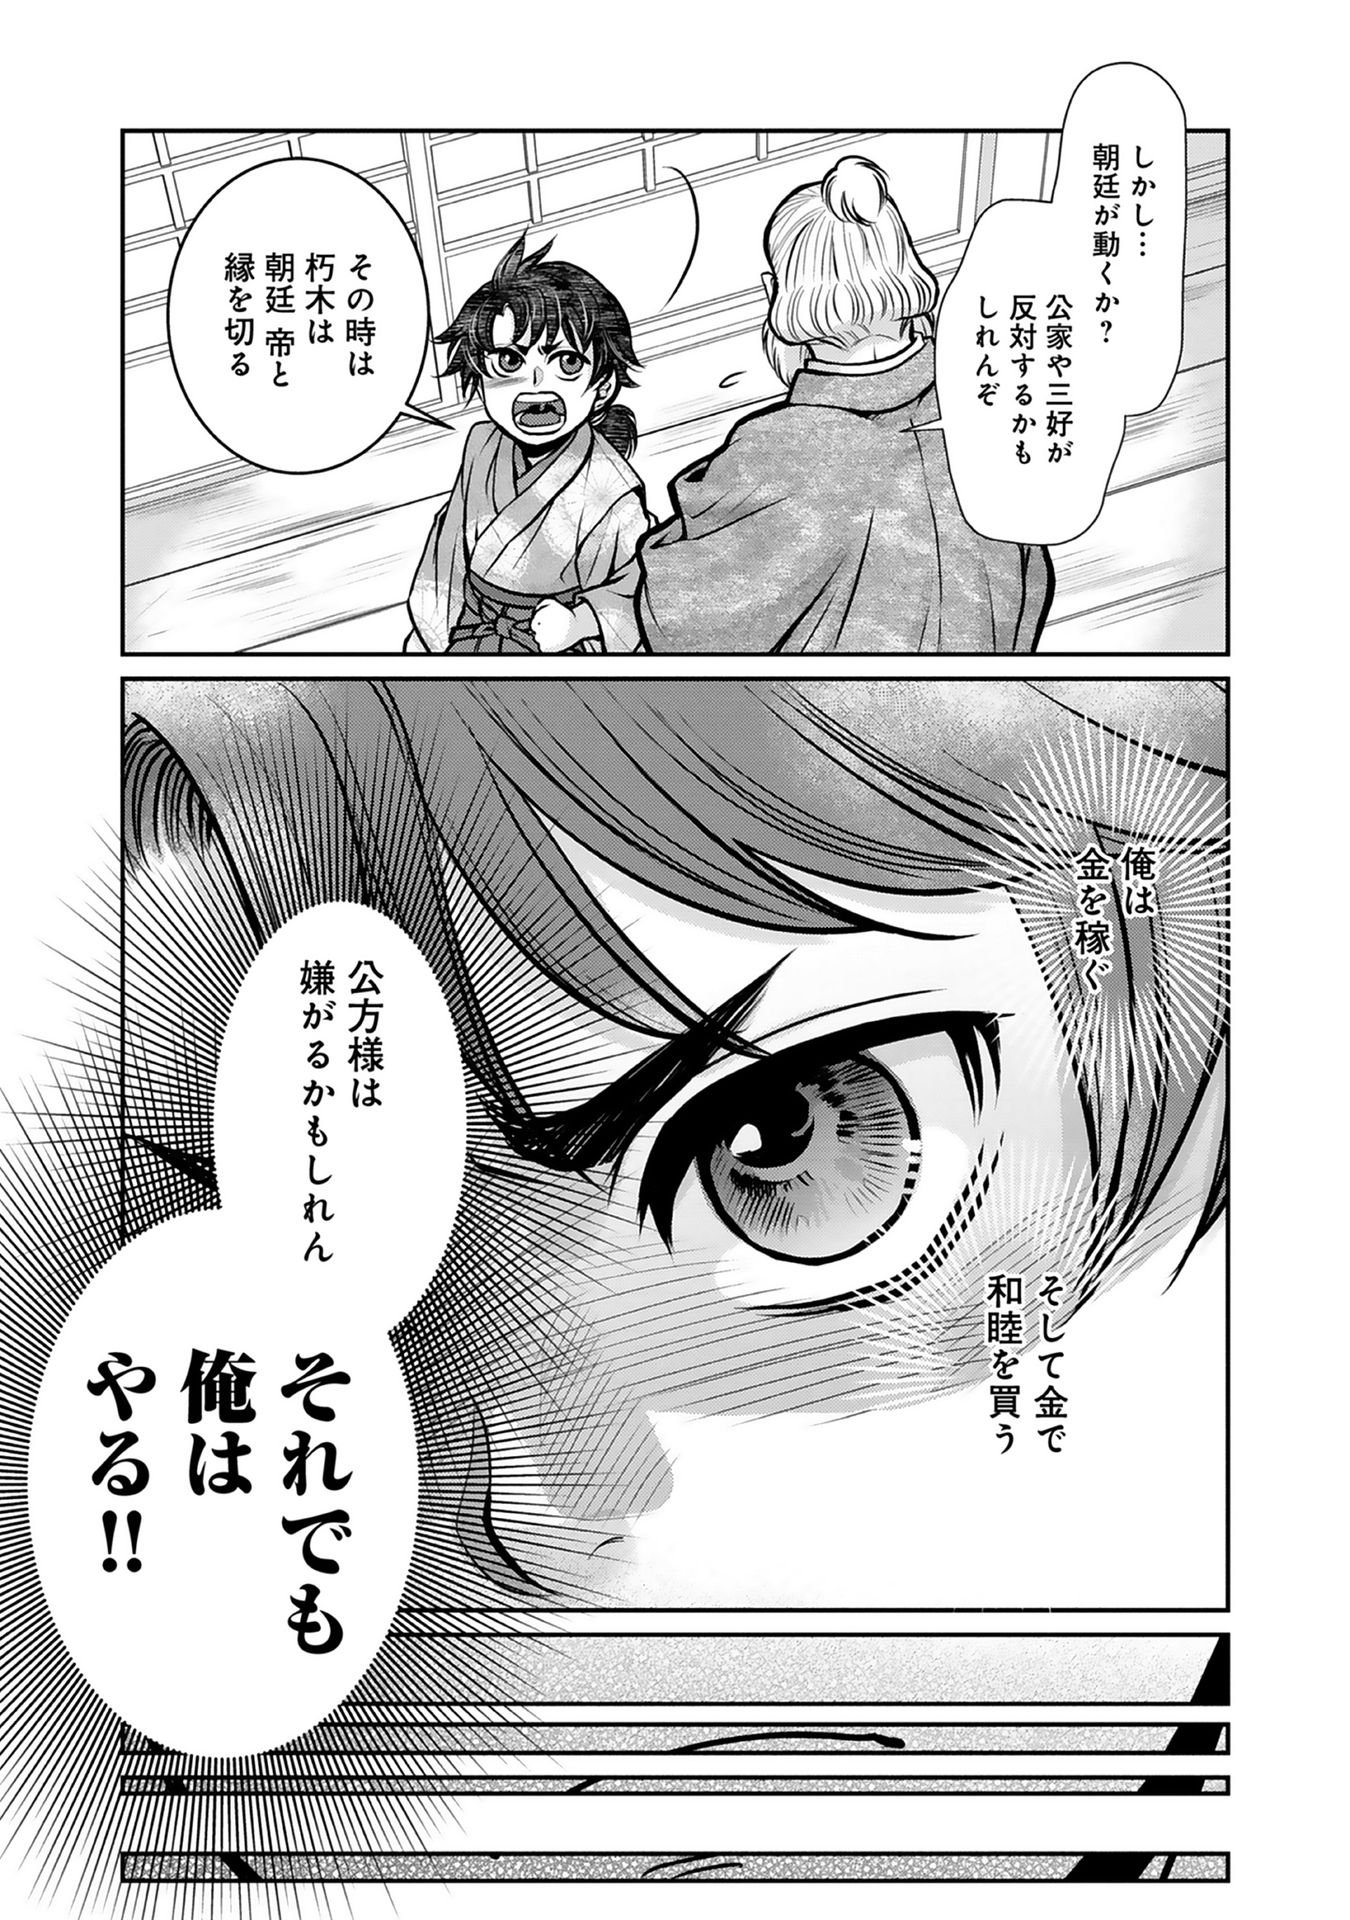 Afumi no Umi – Minamo ga Yureru Toki - Chapter 4 - Page 18